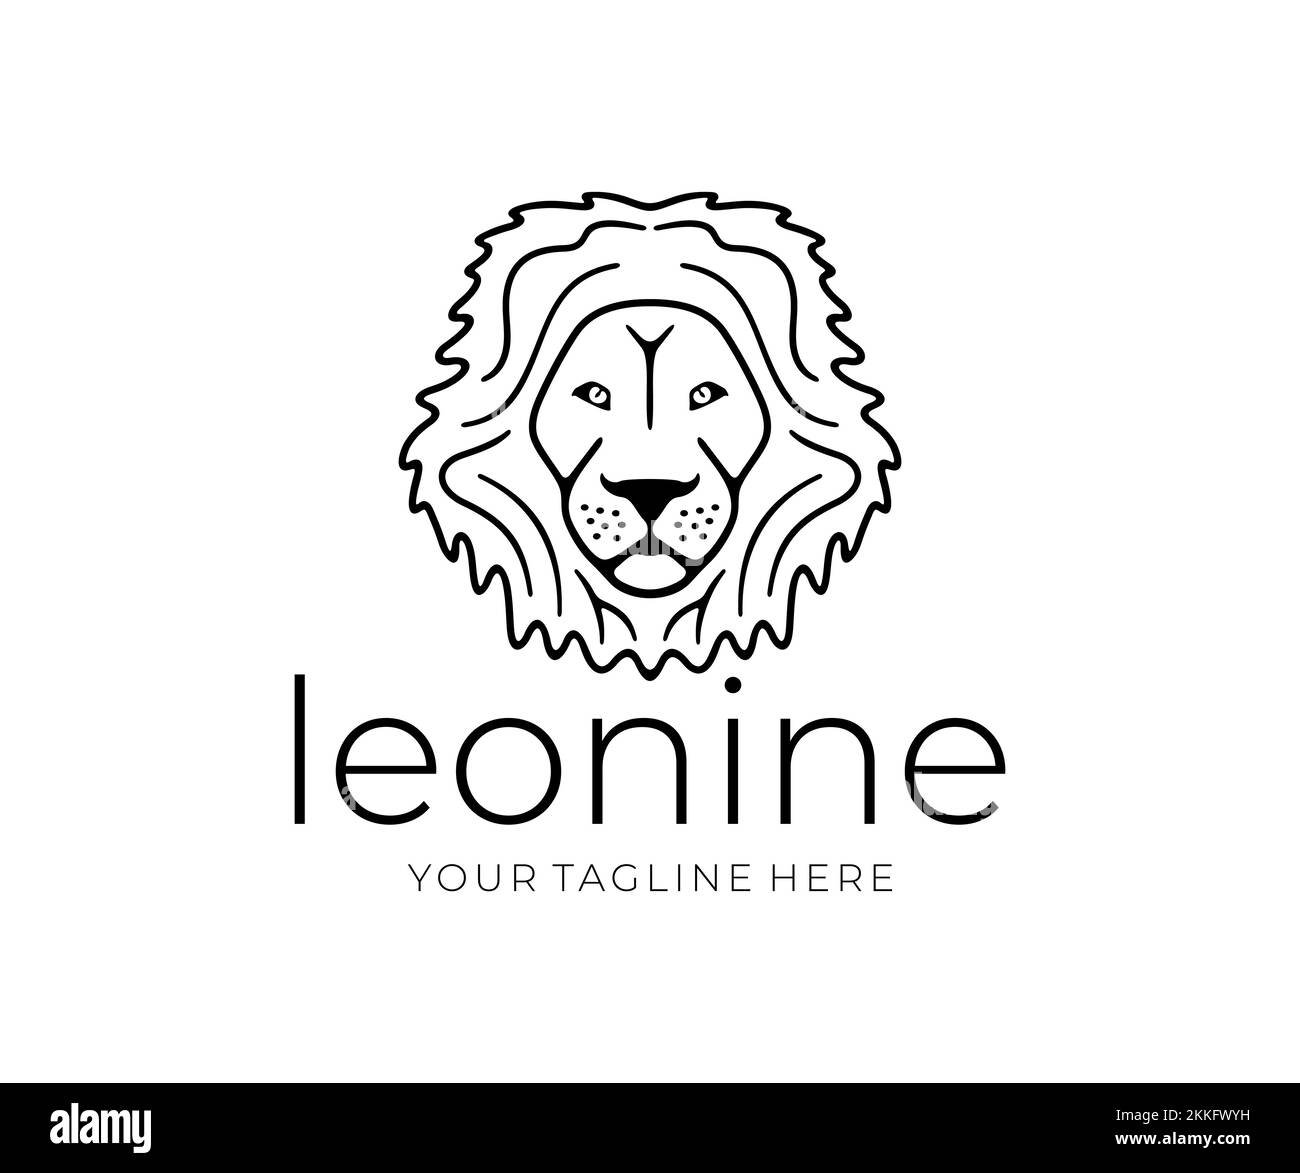 Tête de lion, léonine, animal, prédateur, nature et faune, logo. Museau d'un lion, visage de lion, style silhouette et ligne, motif vectoriel Illustration de Vecteur